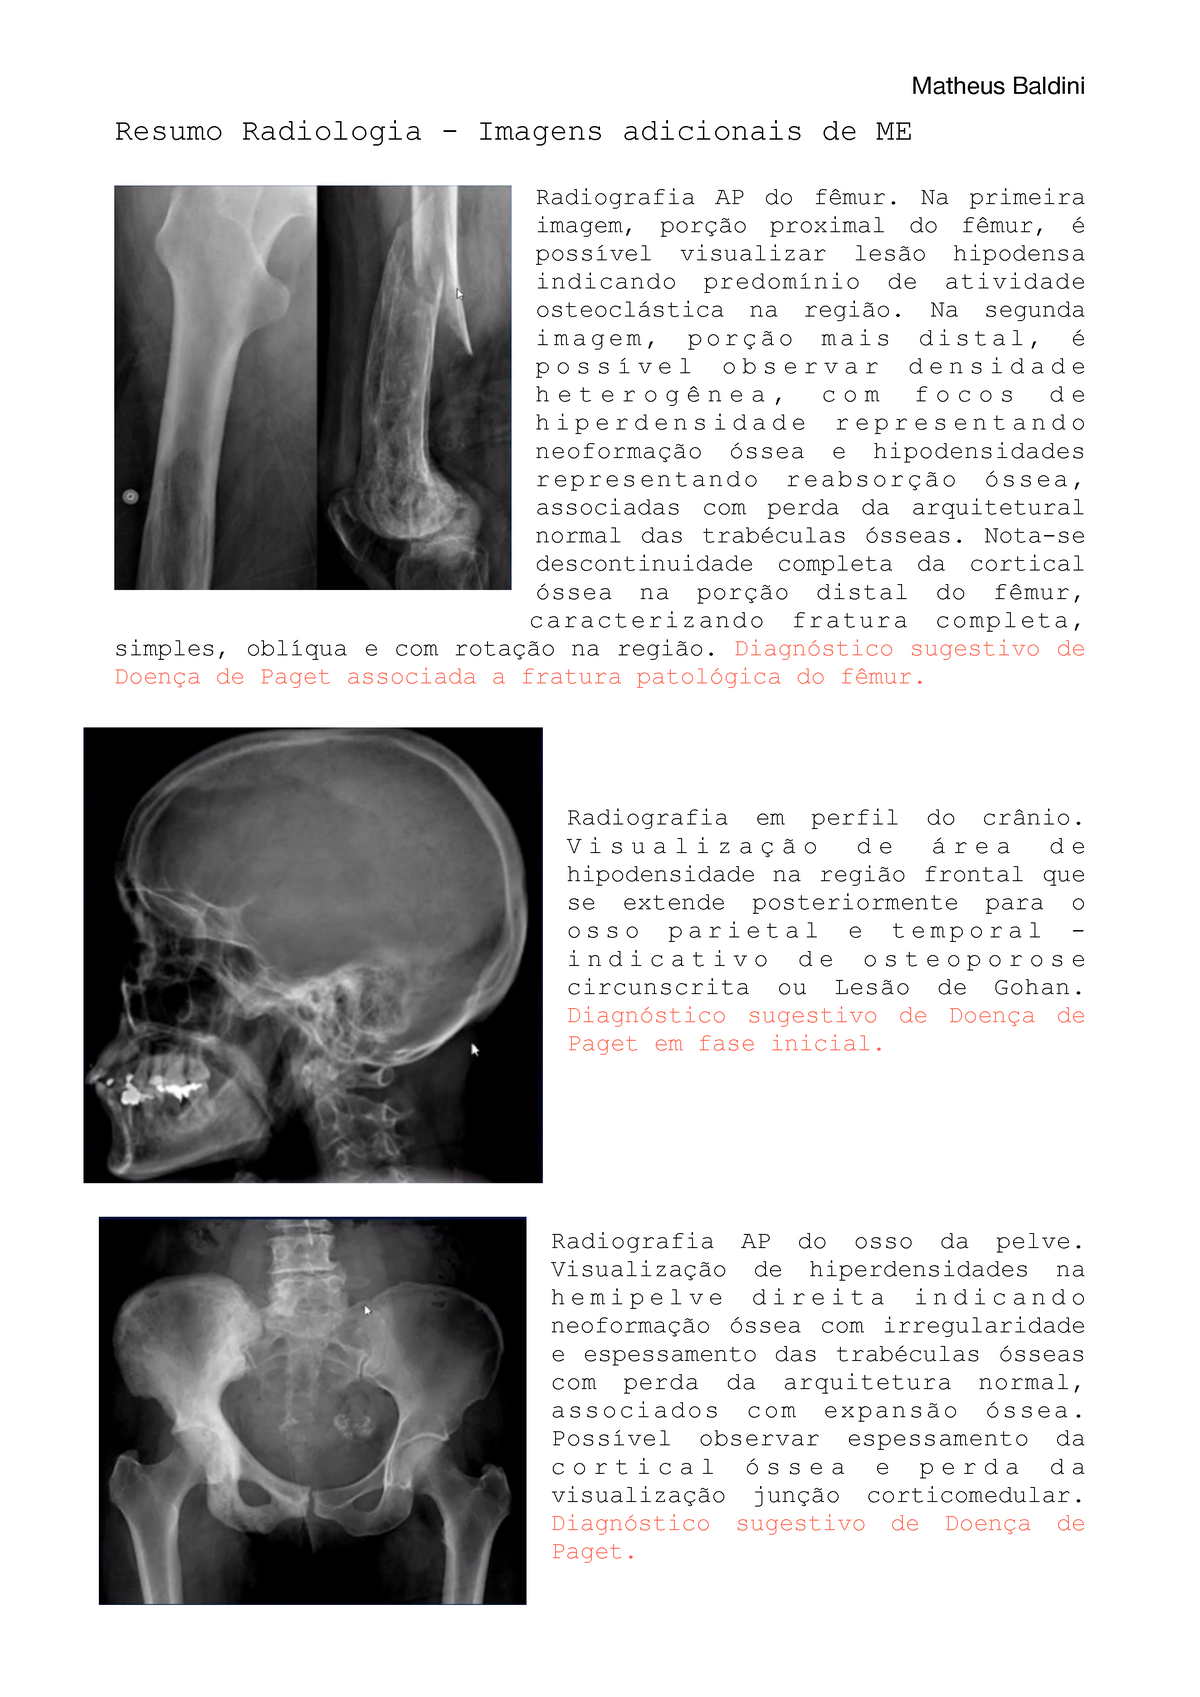 Estudo Radiográfico do Crânio  Resumos Diagnóstico por Imagem